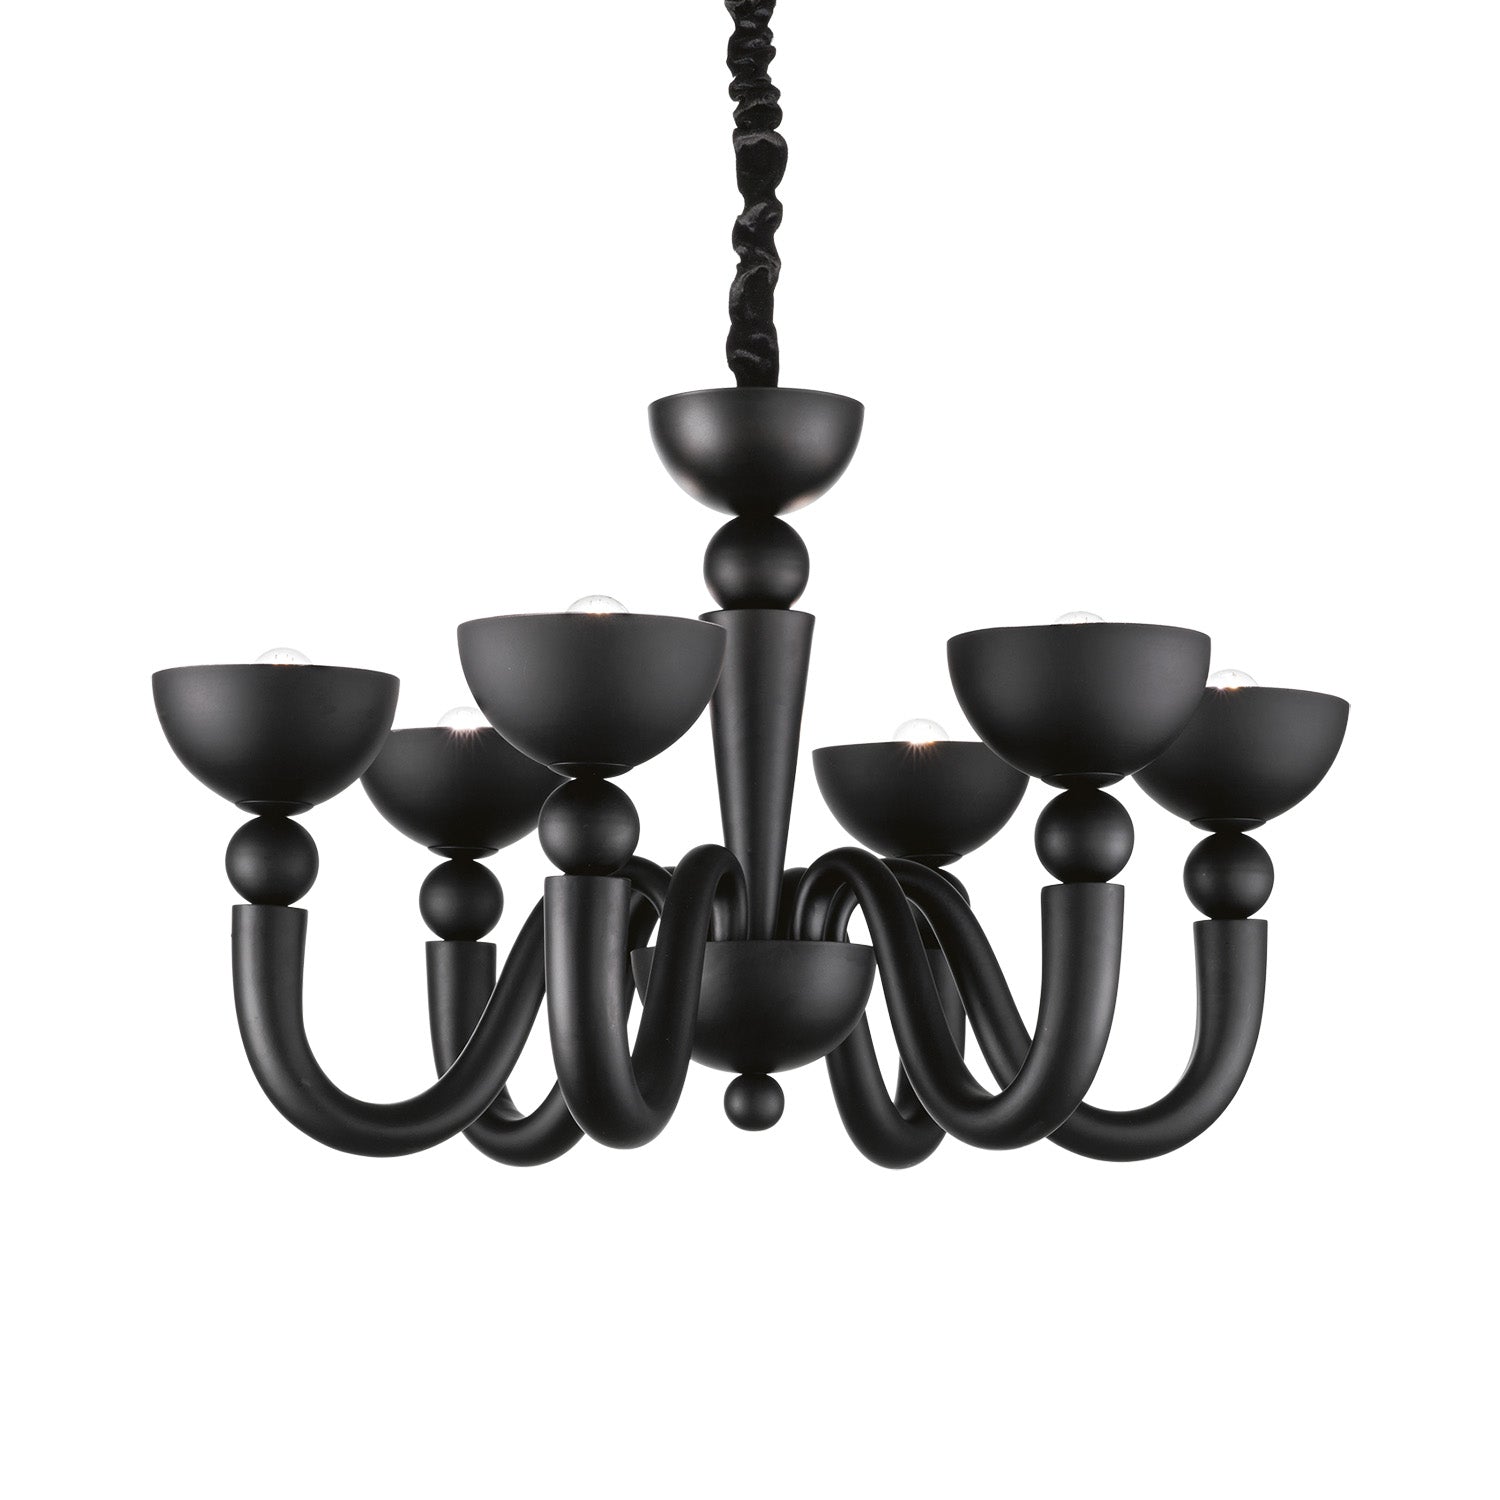 BON BON - Designer chandelier in black or white steel